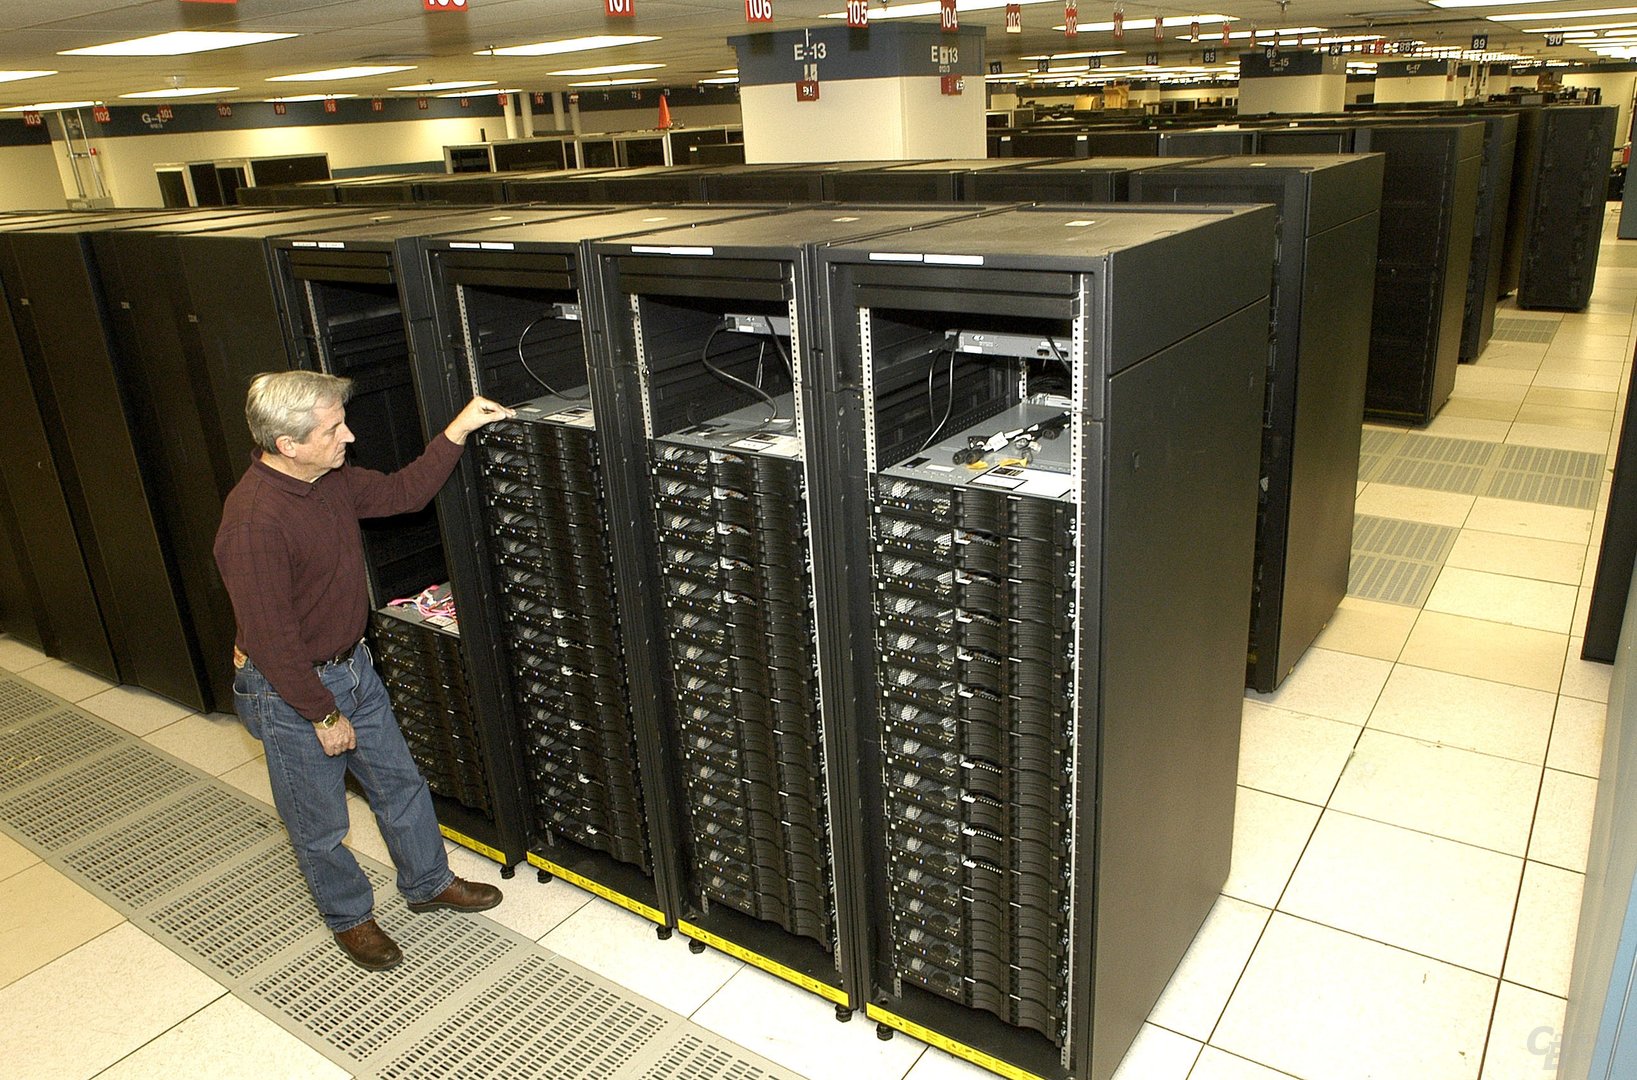 IBM Roadrunner Supercomputer